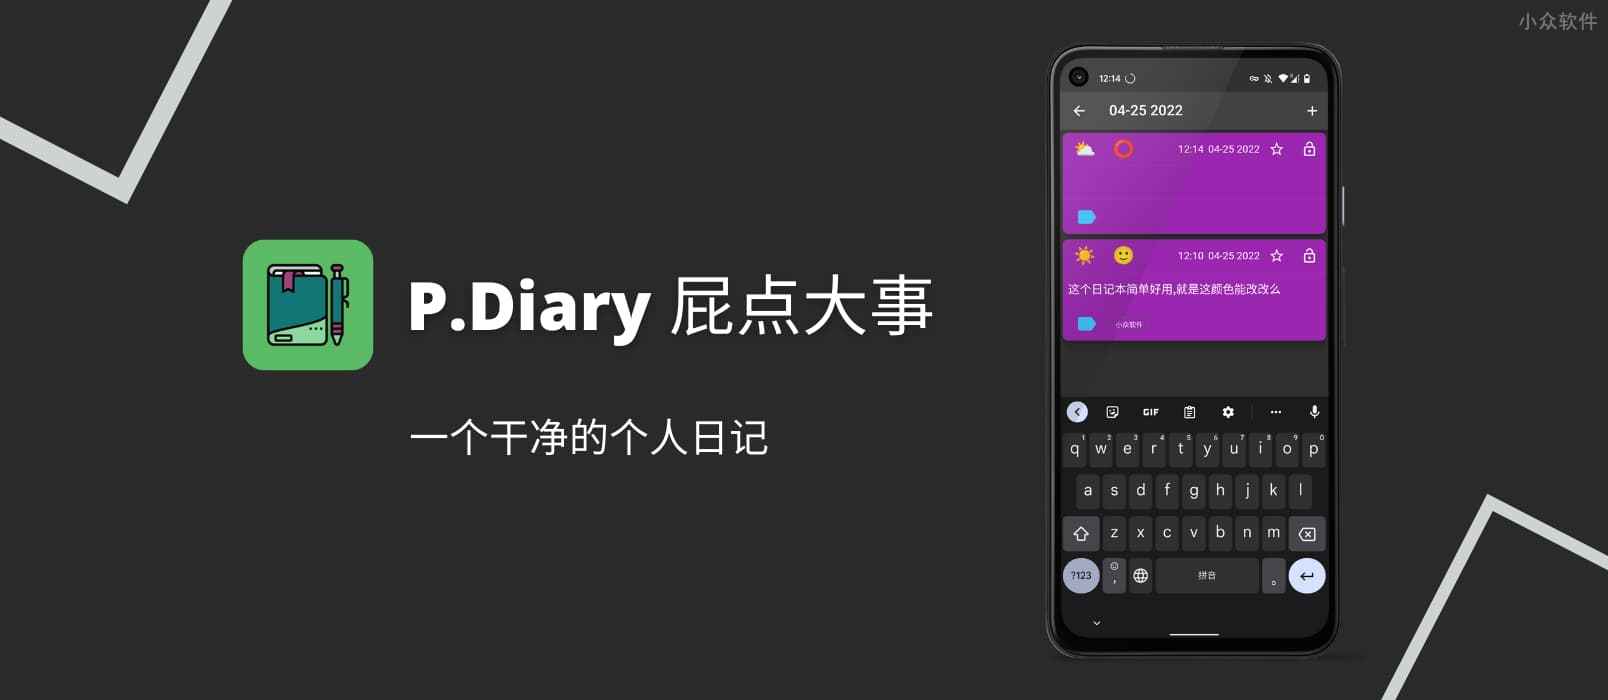 P.Diary – 屁点大事，一个干净的个人日记[Android]